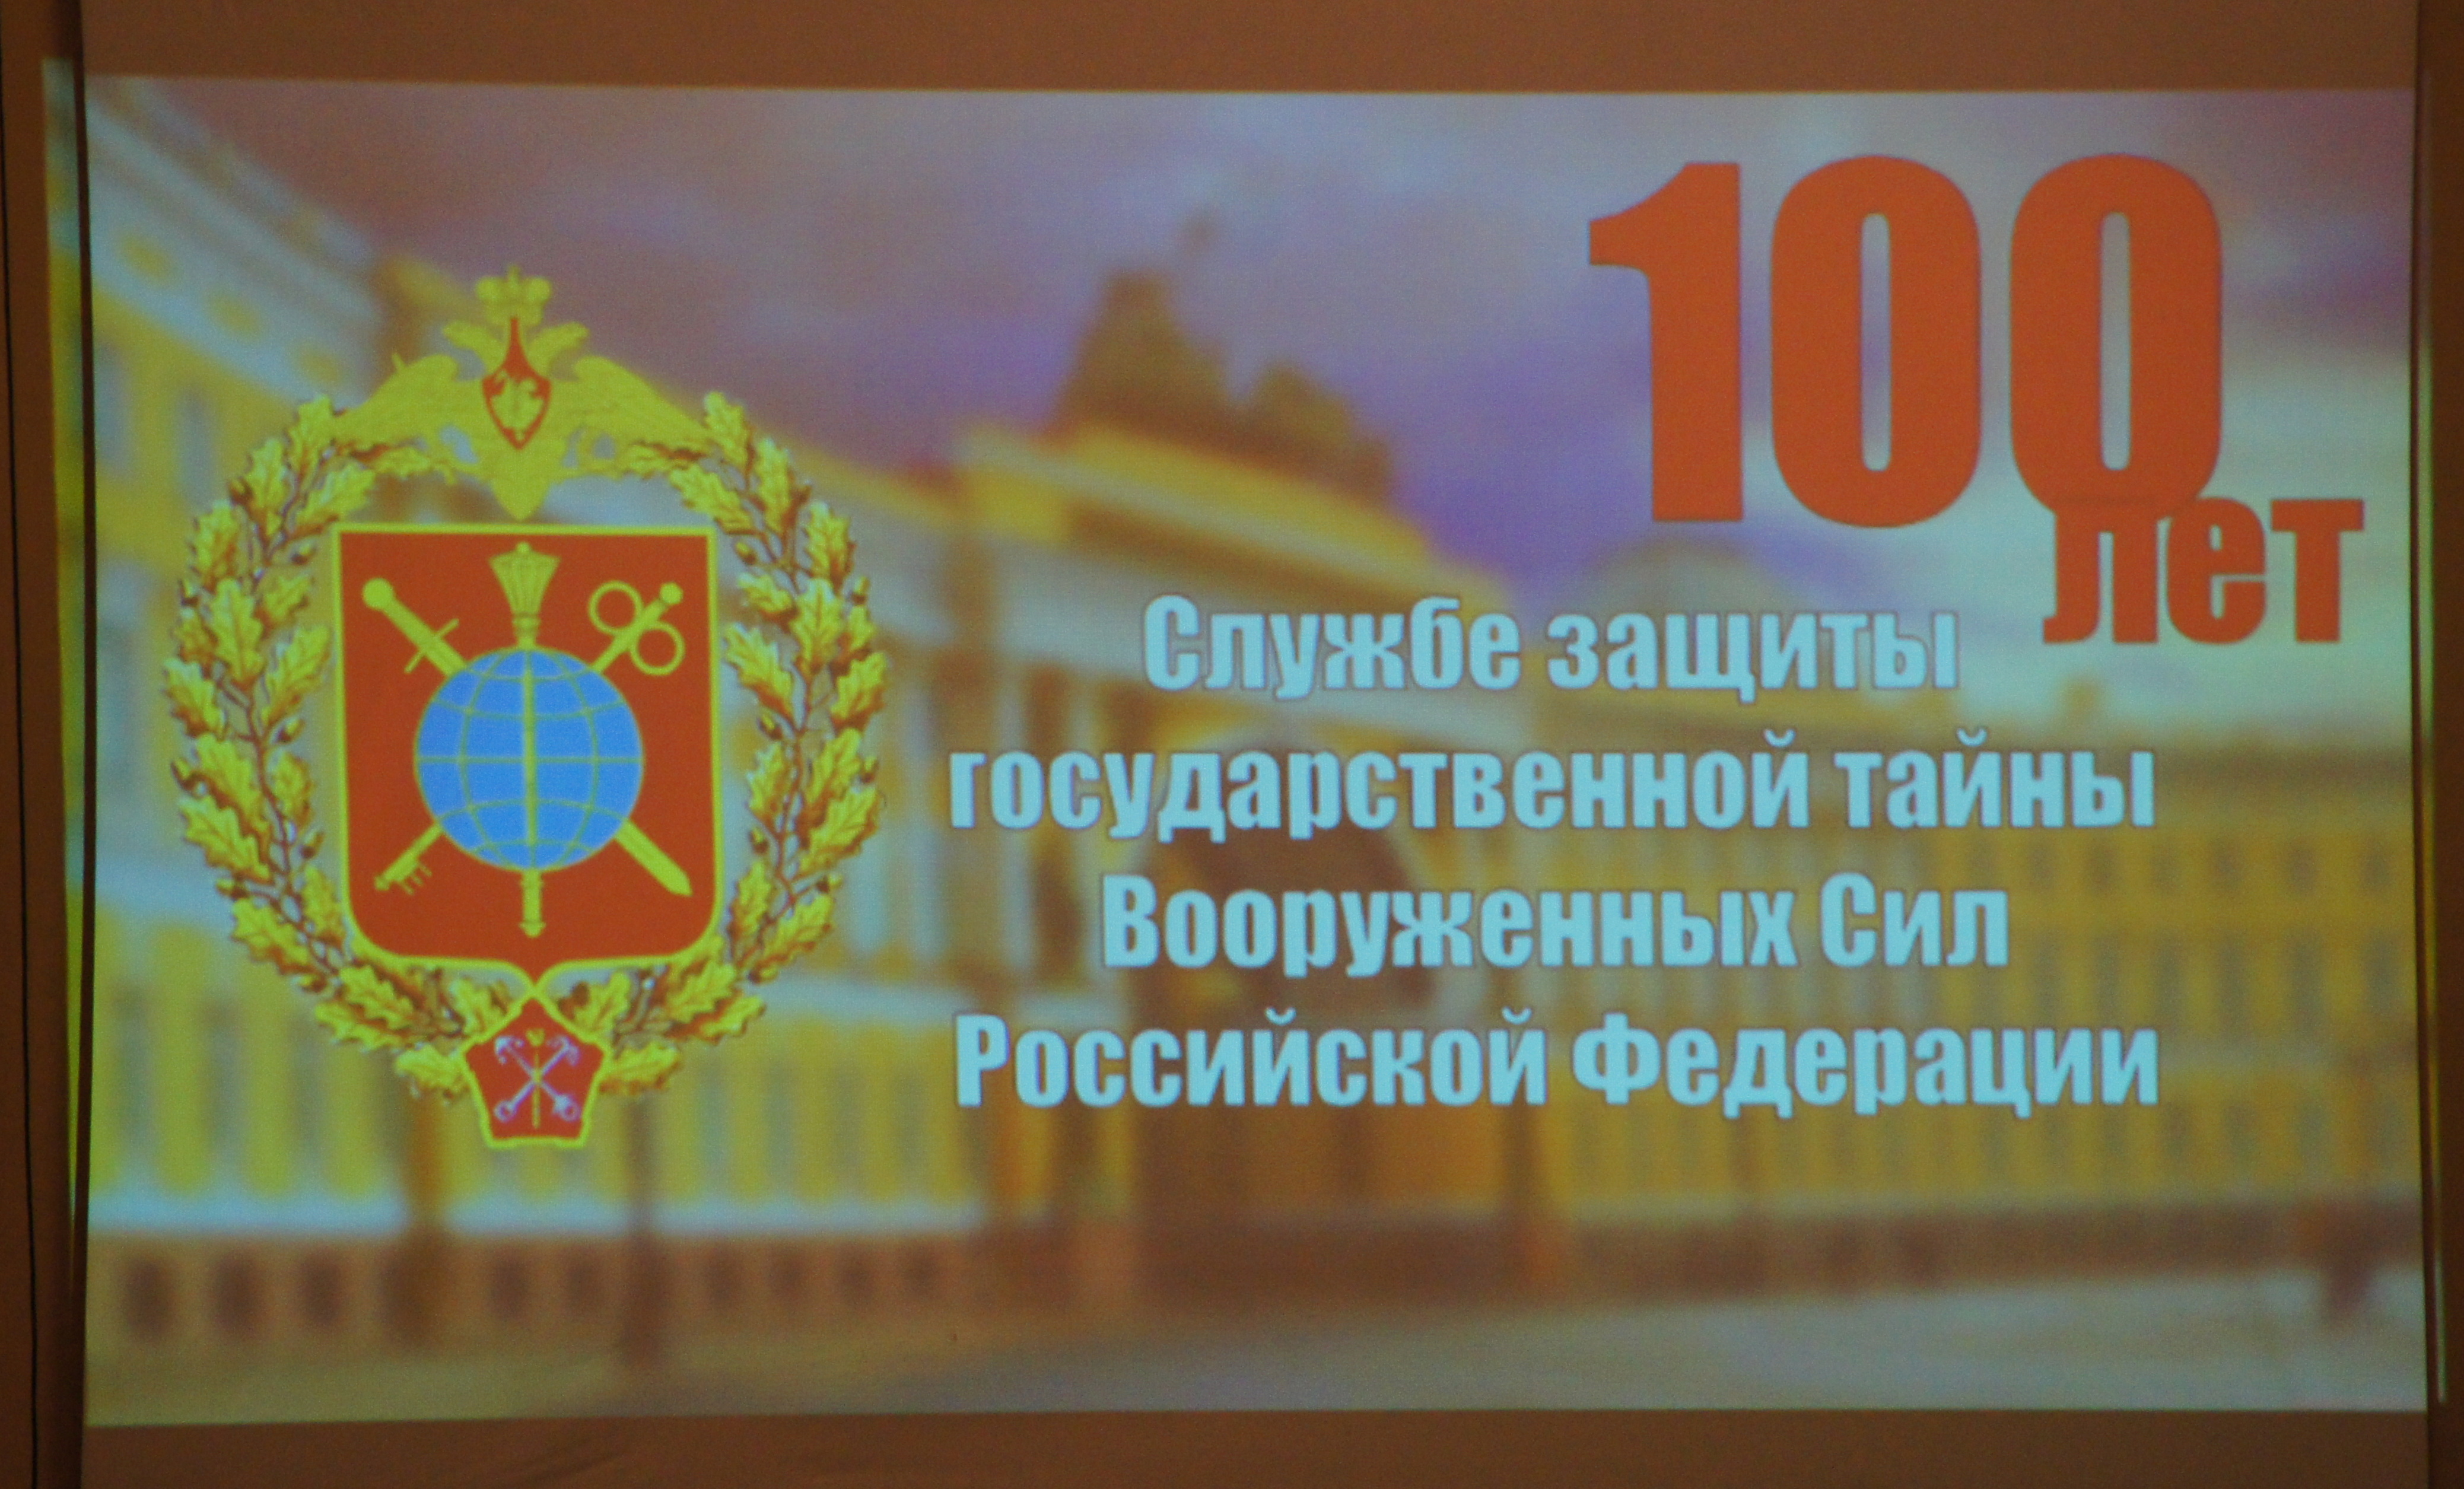 Сколько лет в России празднуют День ЗГТ